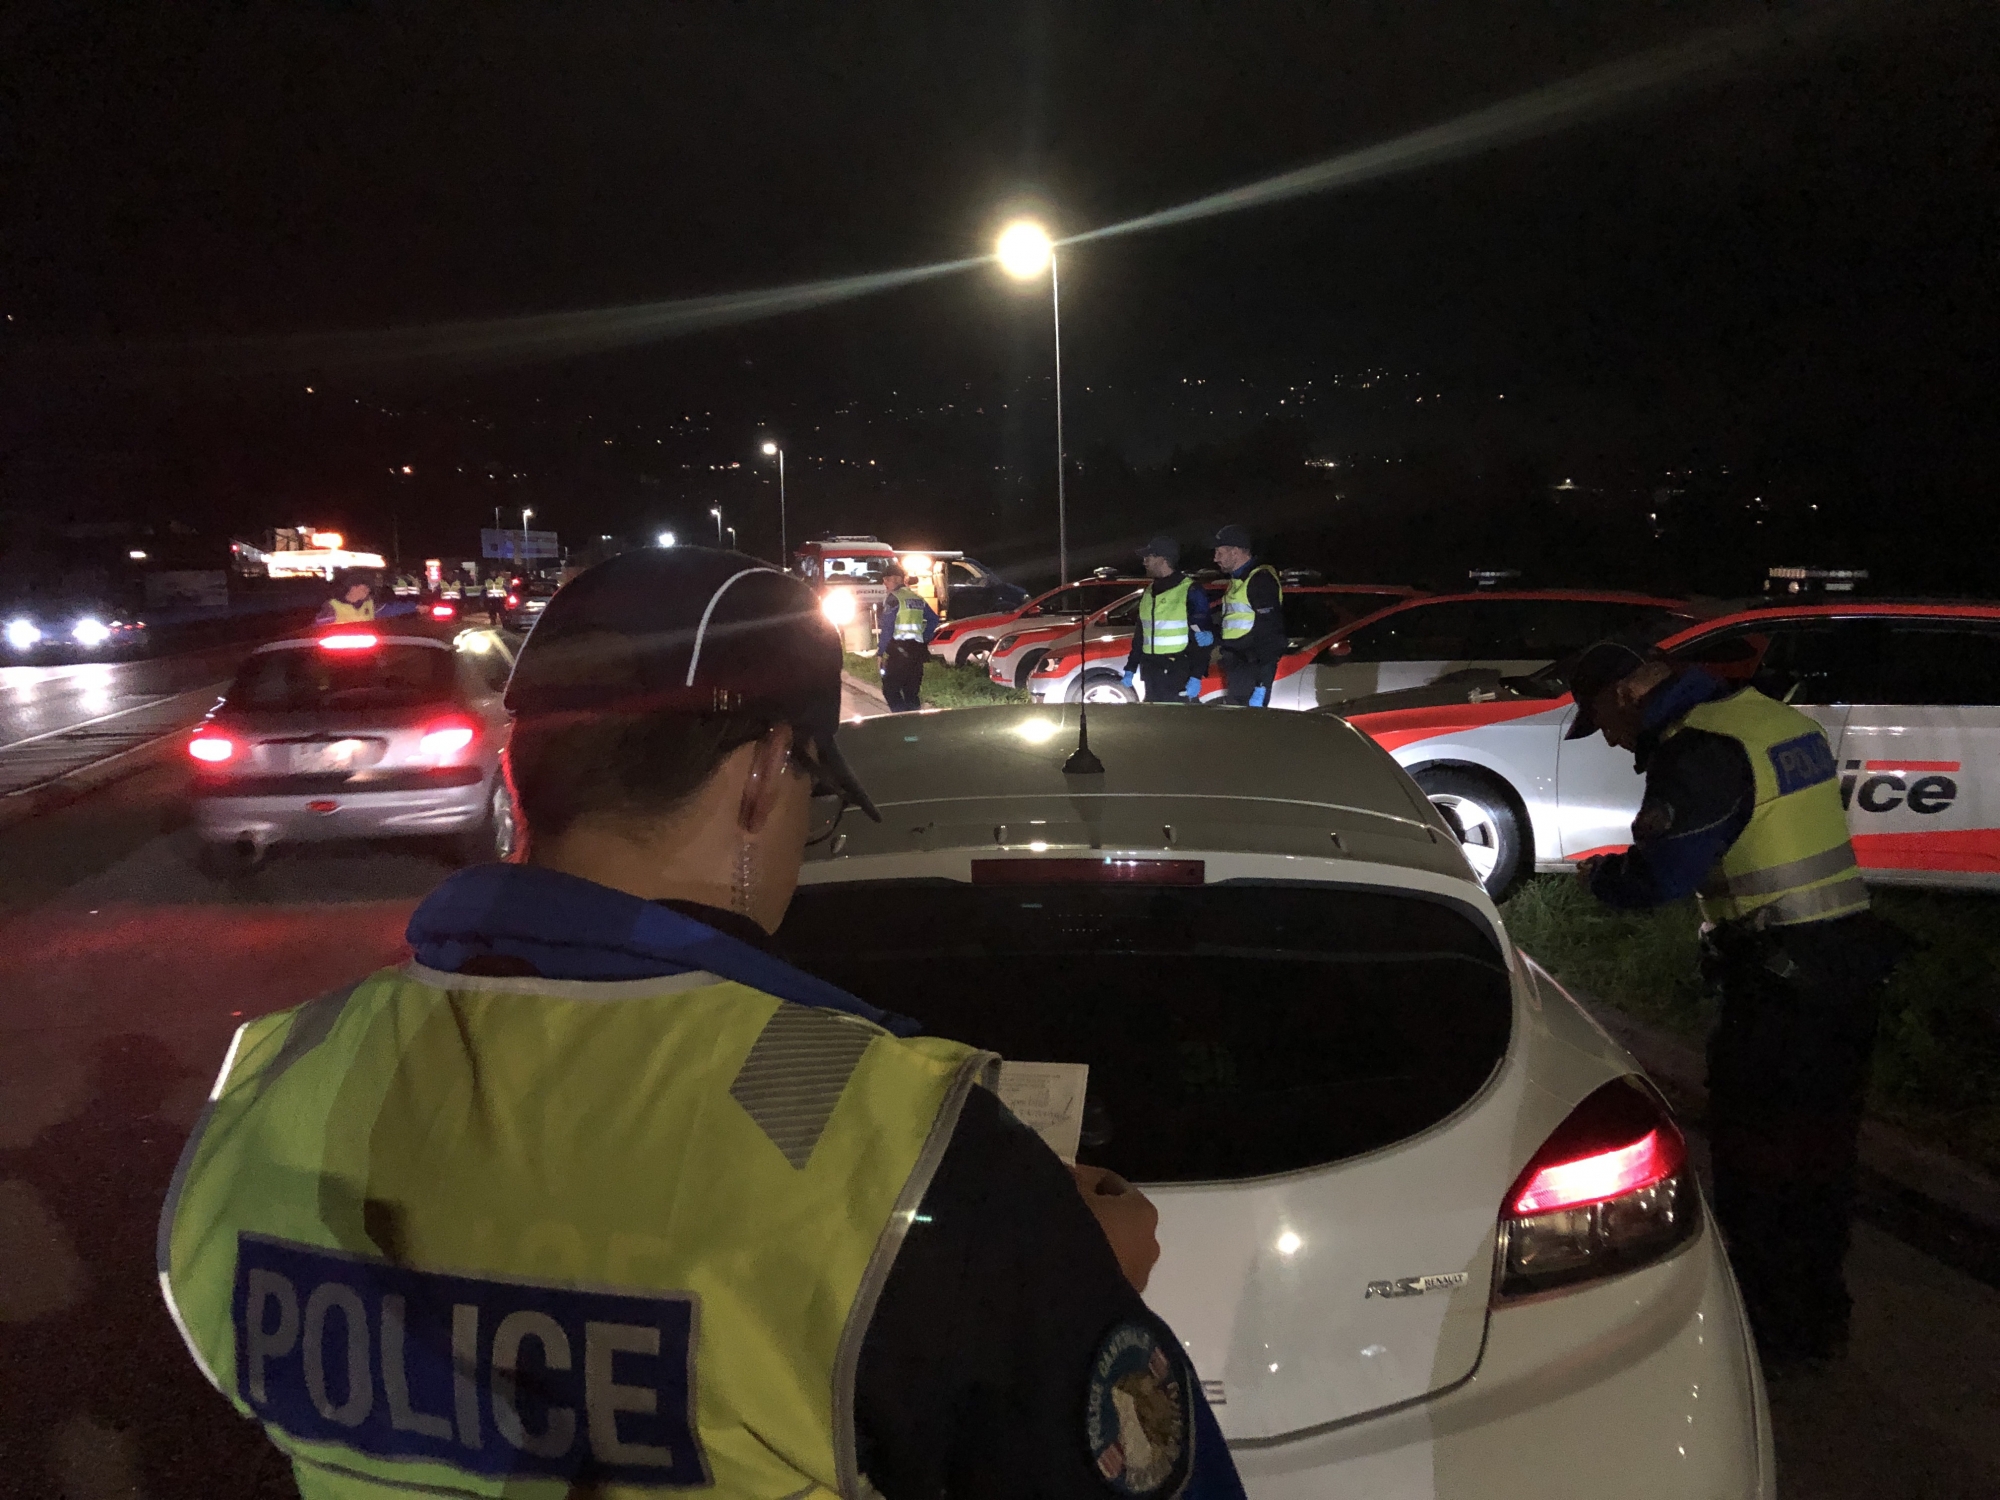 238 véhicules ont notamment été contrôlés dans le cadre de l'importante opération policière de mardi soir 22 octobre à Monthey.